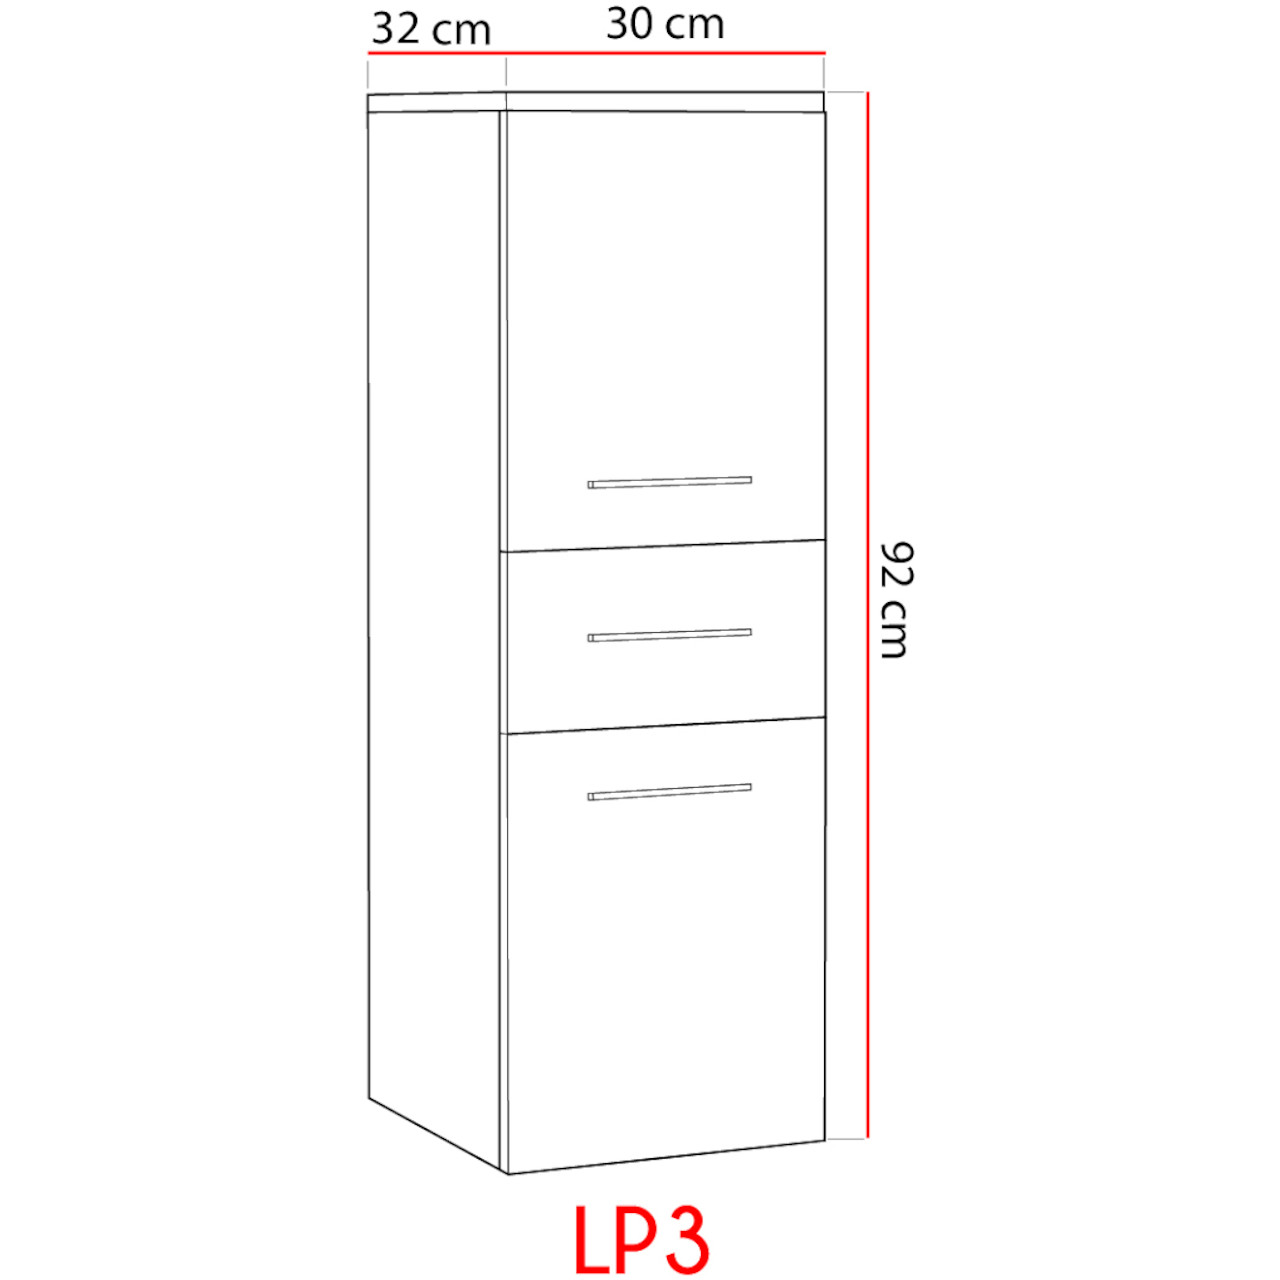 Koupelnová skříňka nízká LUPO LP3 bílý laminát